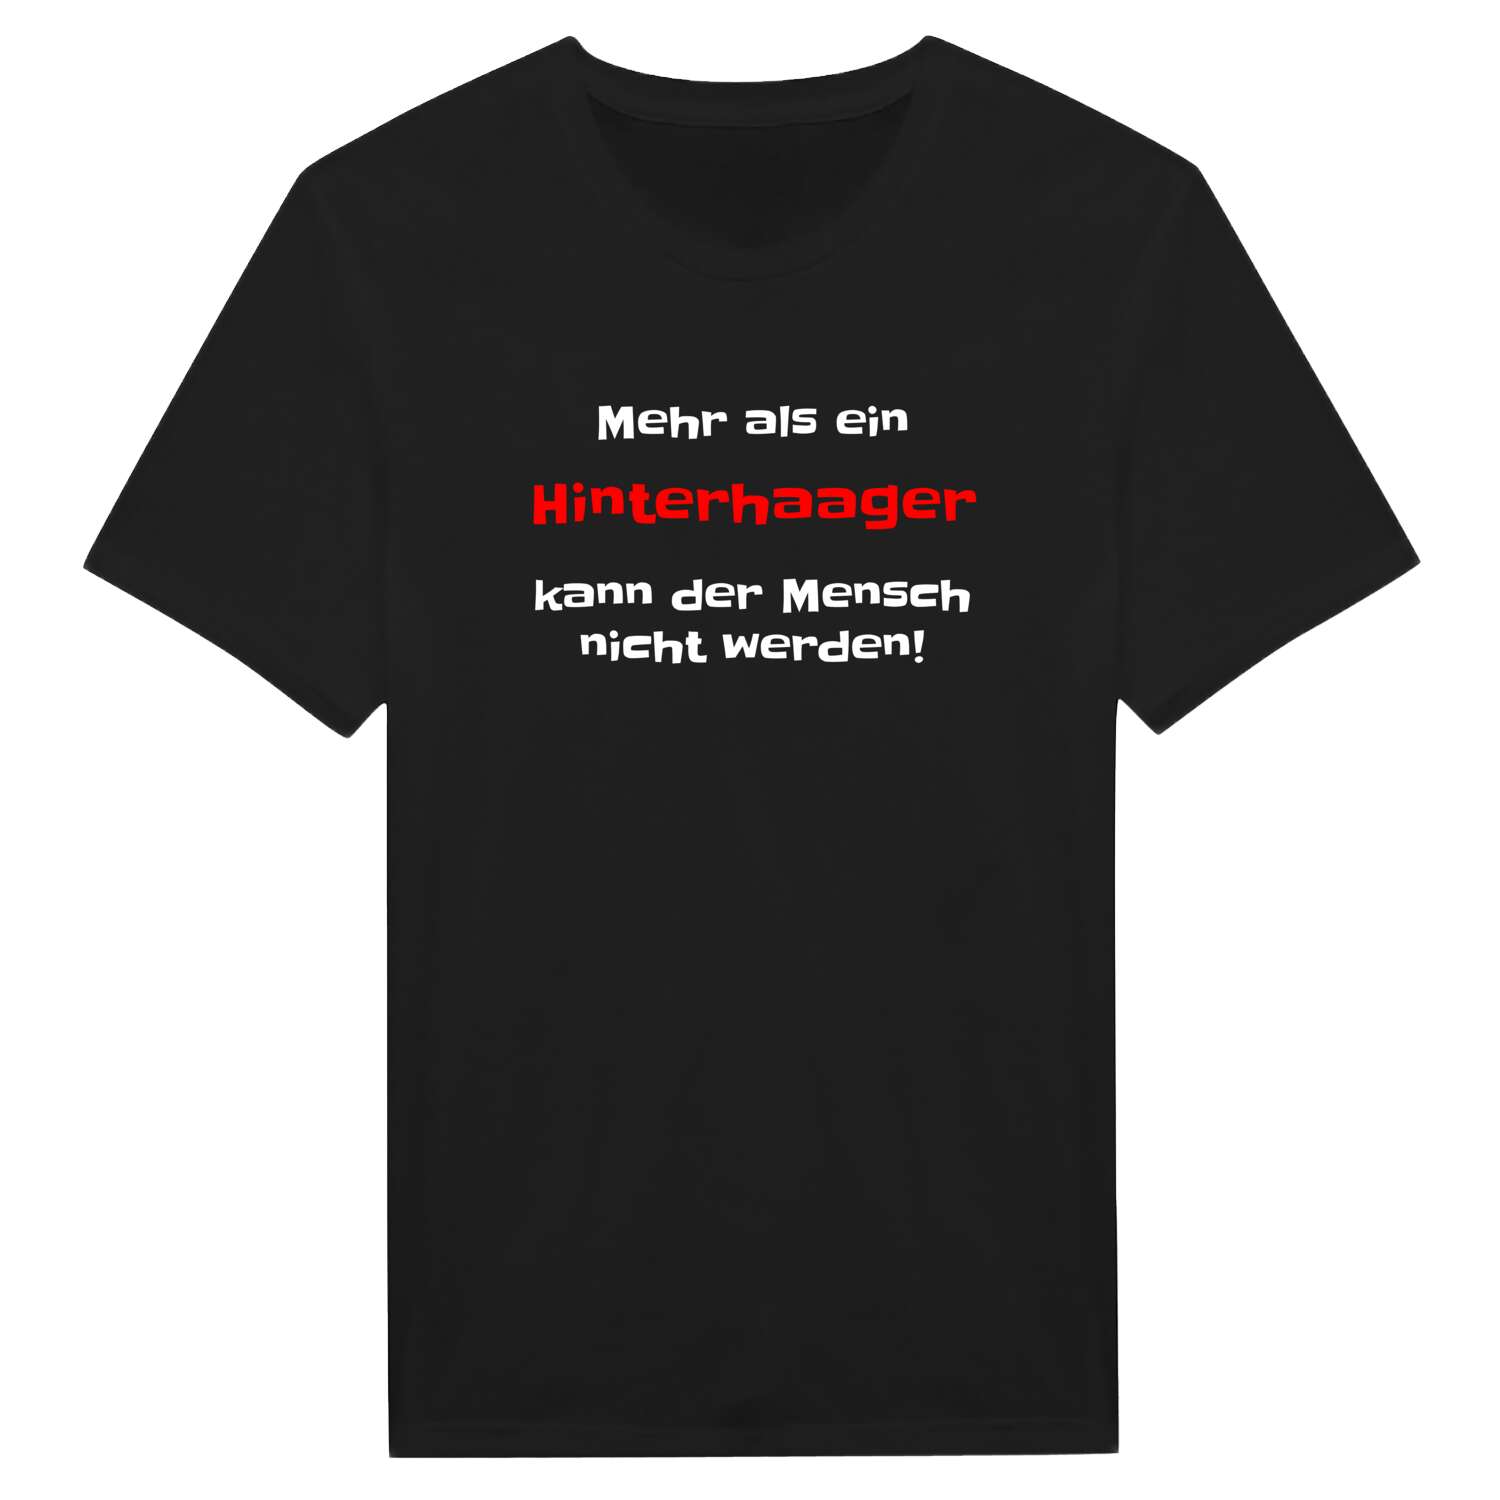 Hinterhaag T-Shirt »Mehr als ein«